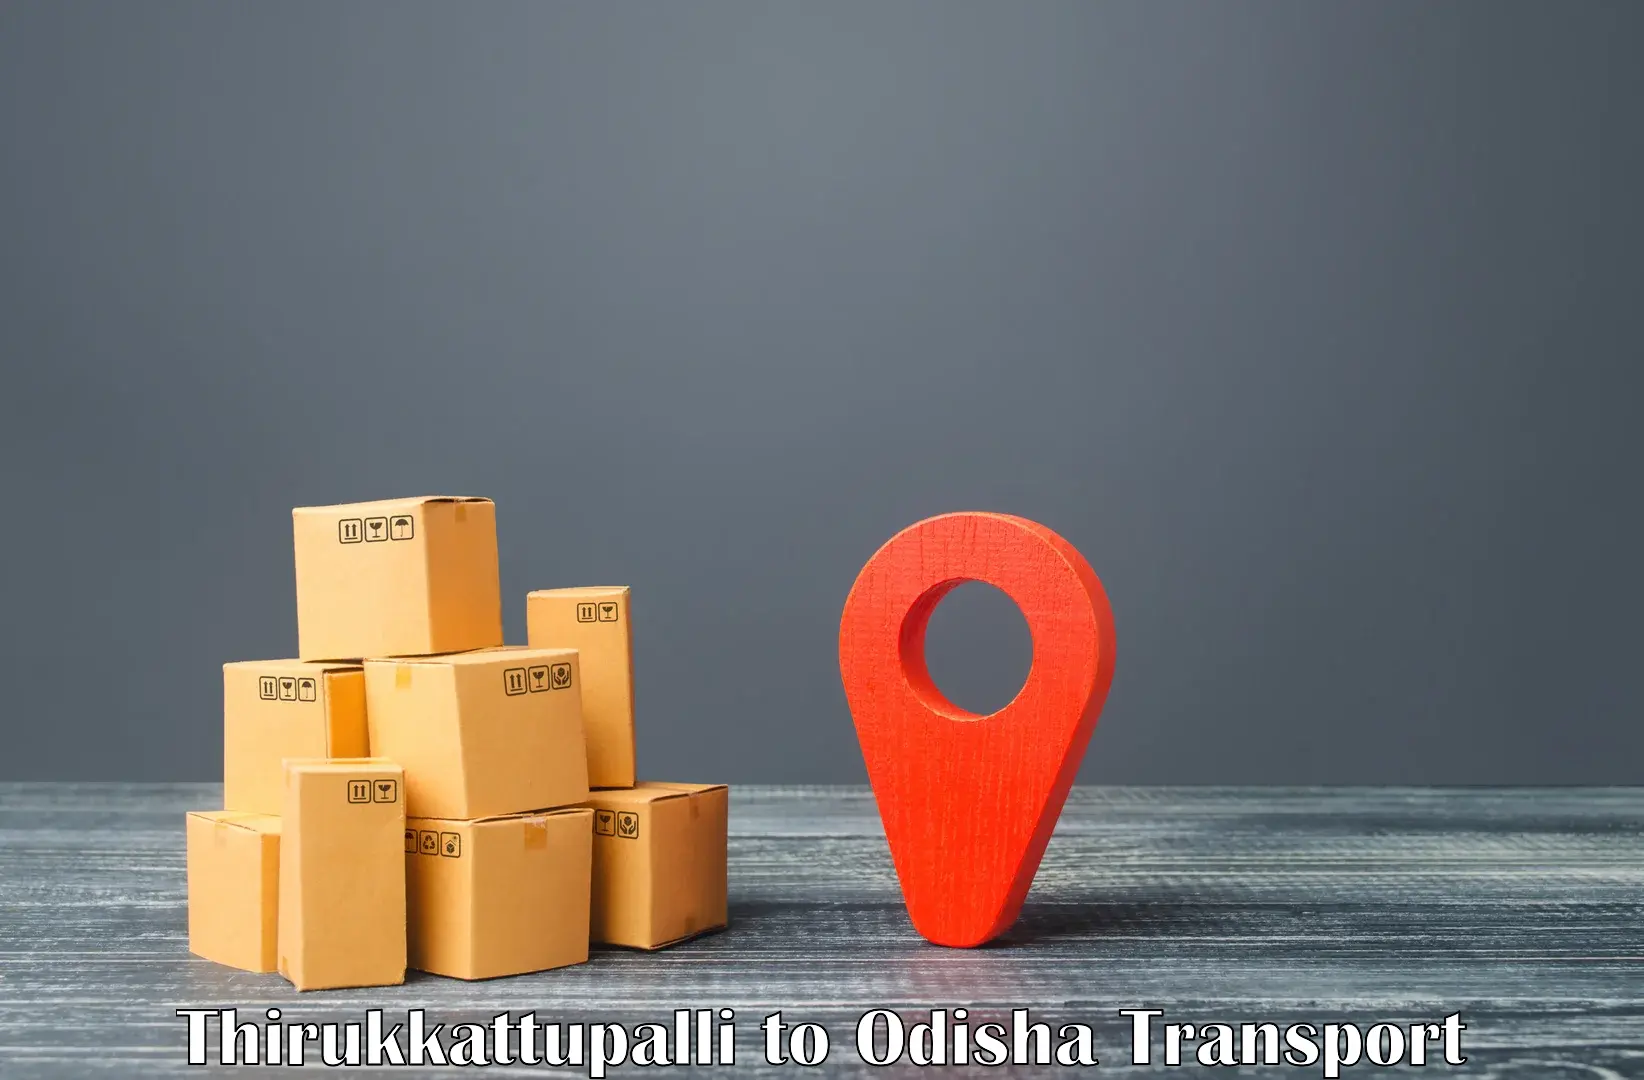 Cargo transportation services Thirukkattupalli to Nimapara